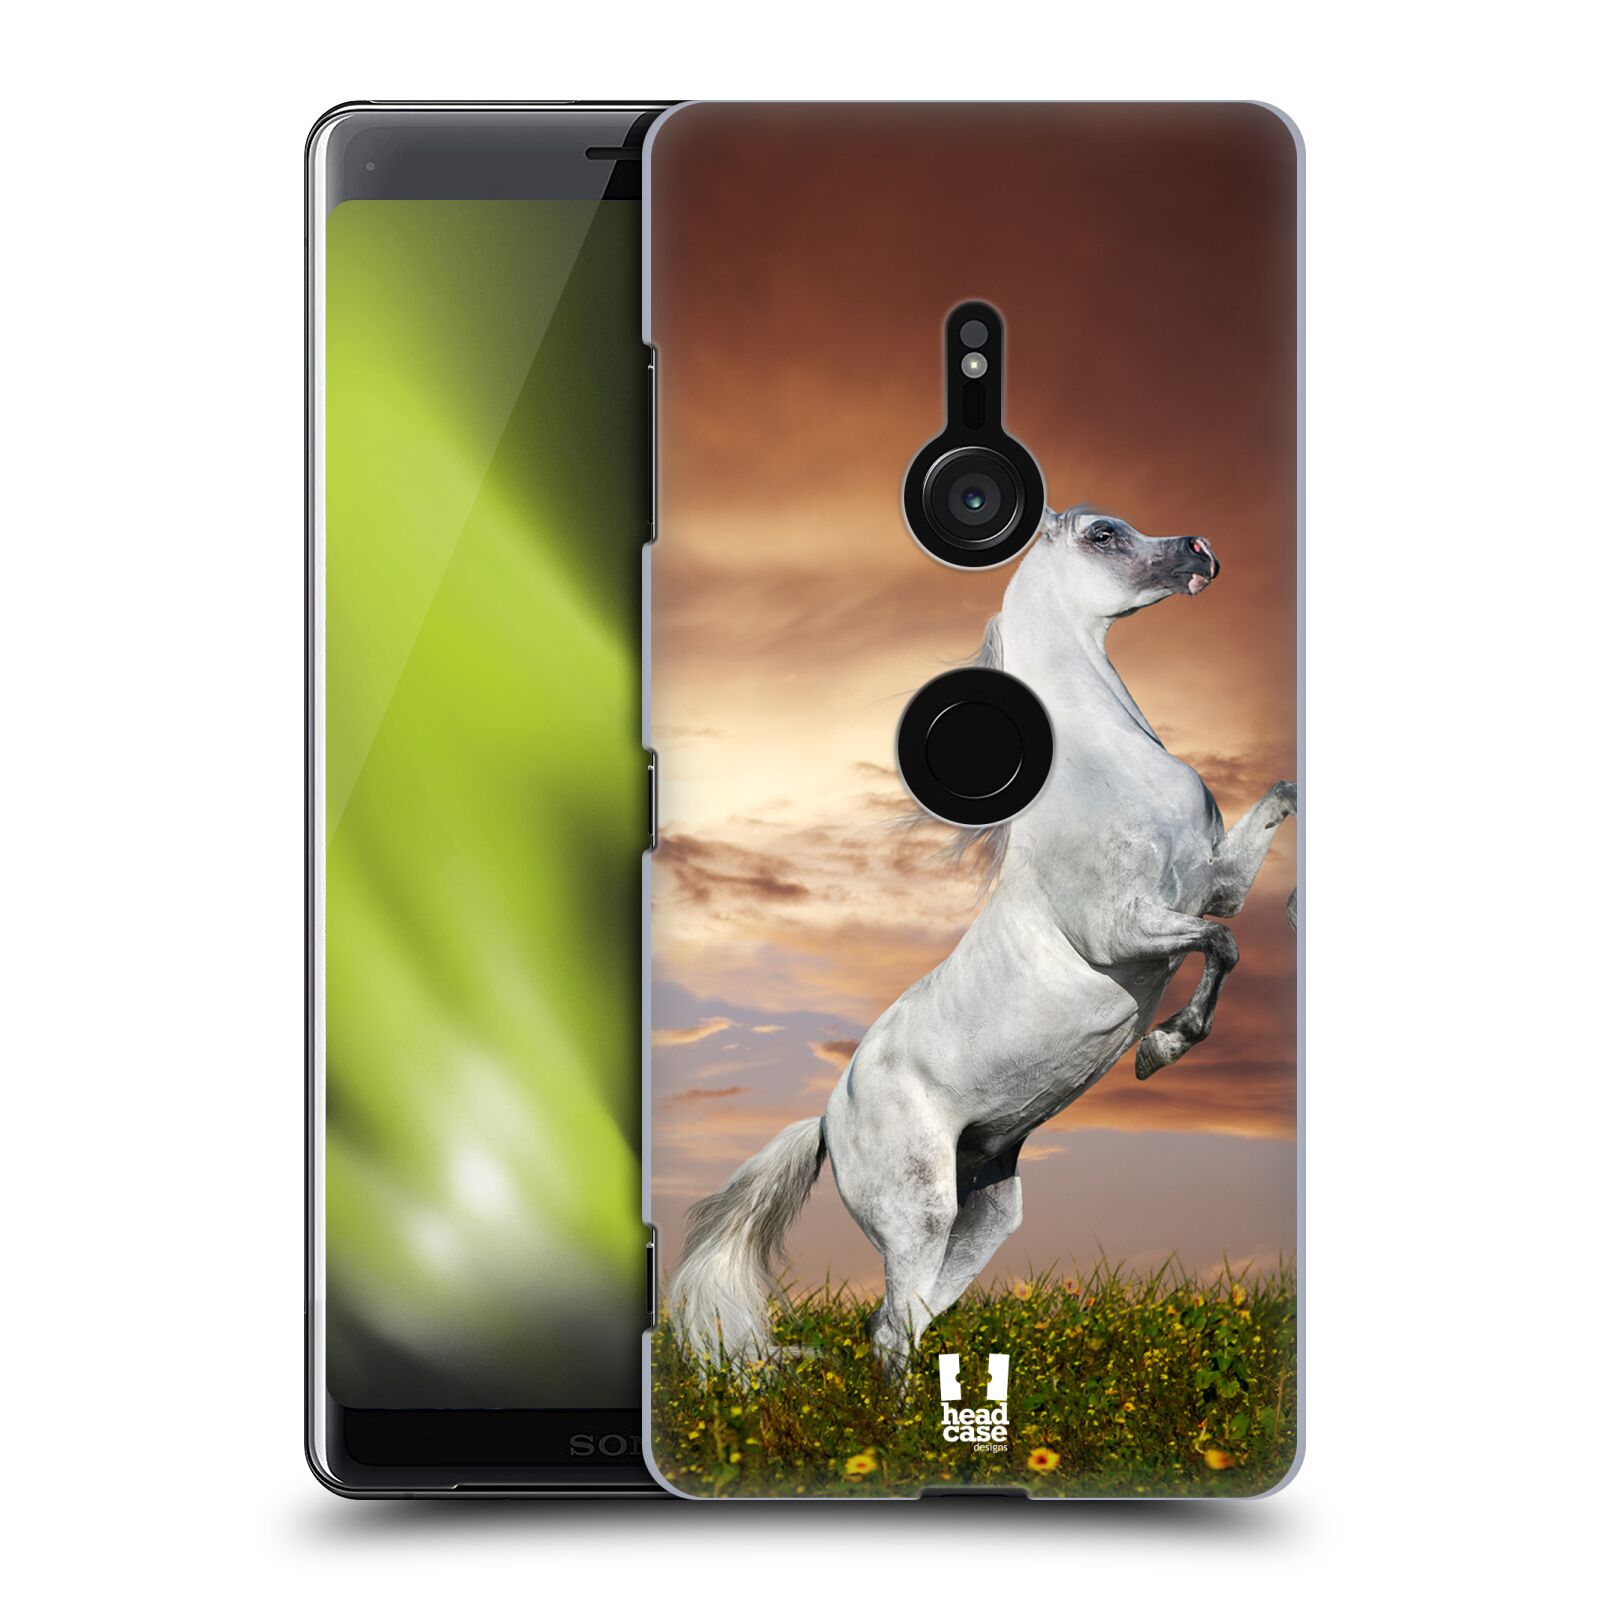 Zadní obal pro mobil Sony Xperia XZ3 - HEAD CASE - Svět zvířat divoký kůň